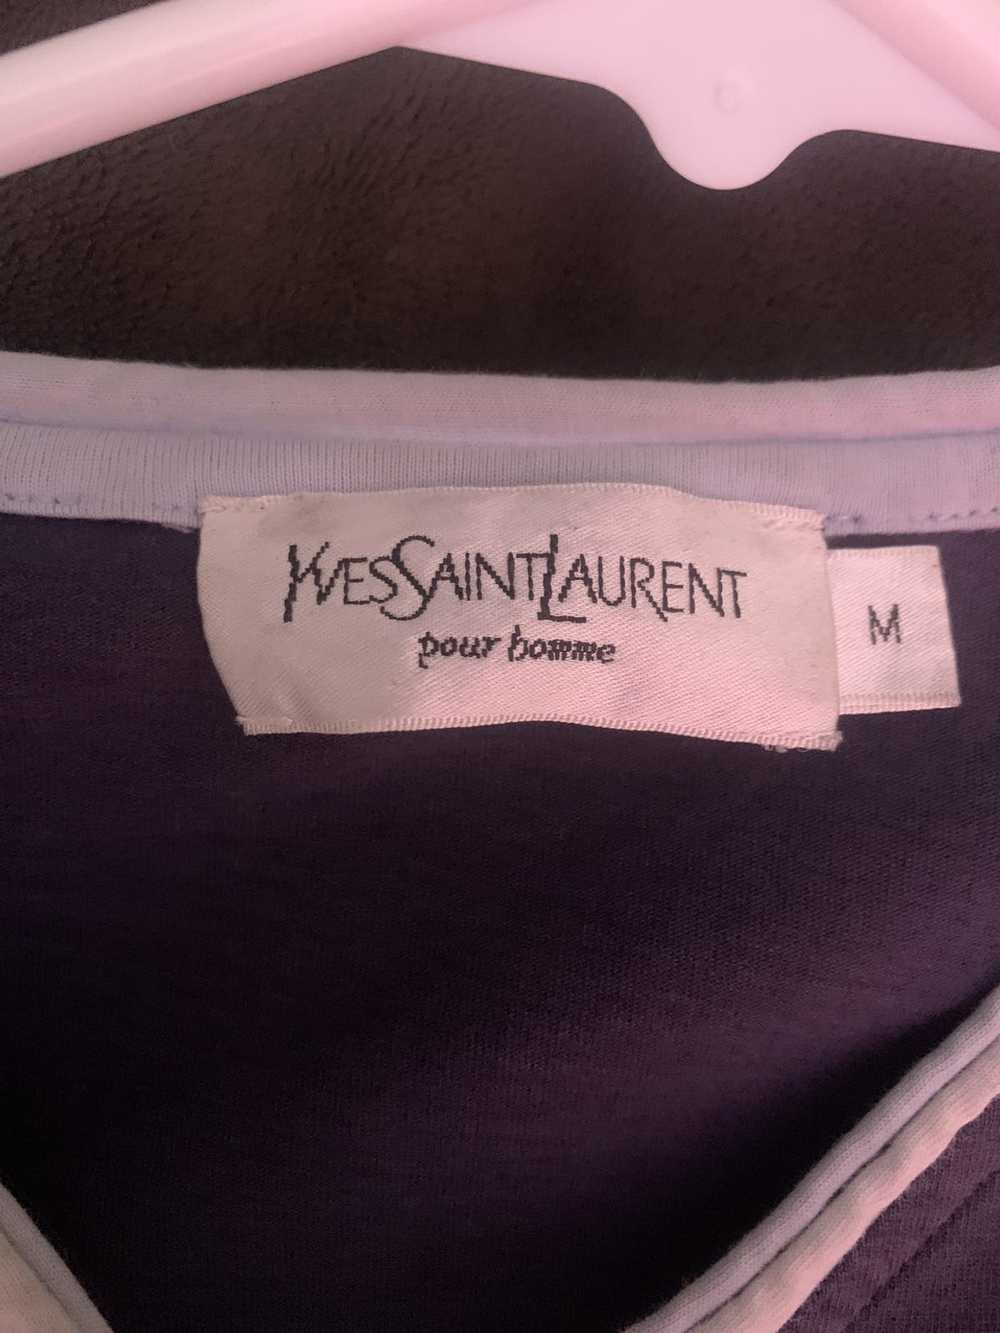 Yves Saint Laurent saint laurent shirt - image 2